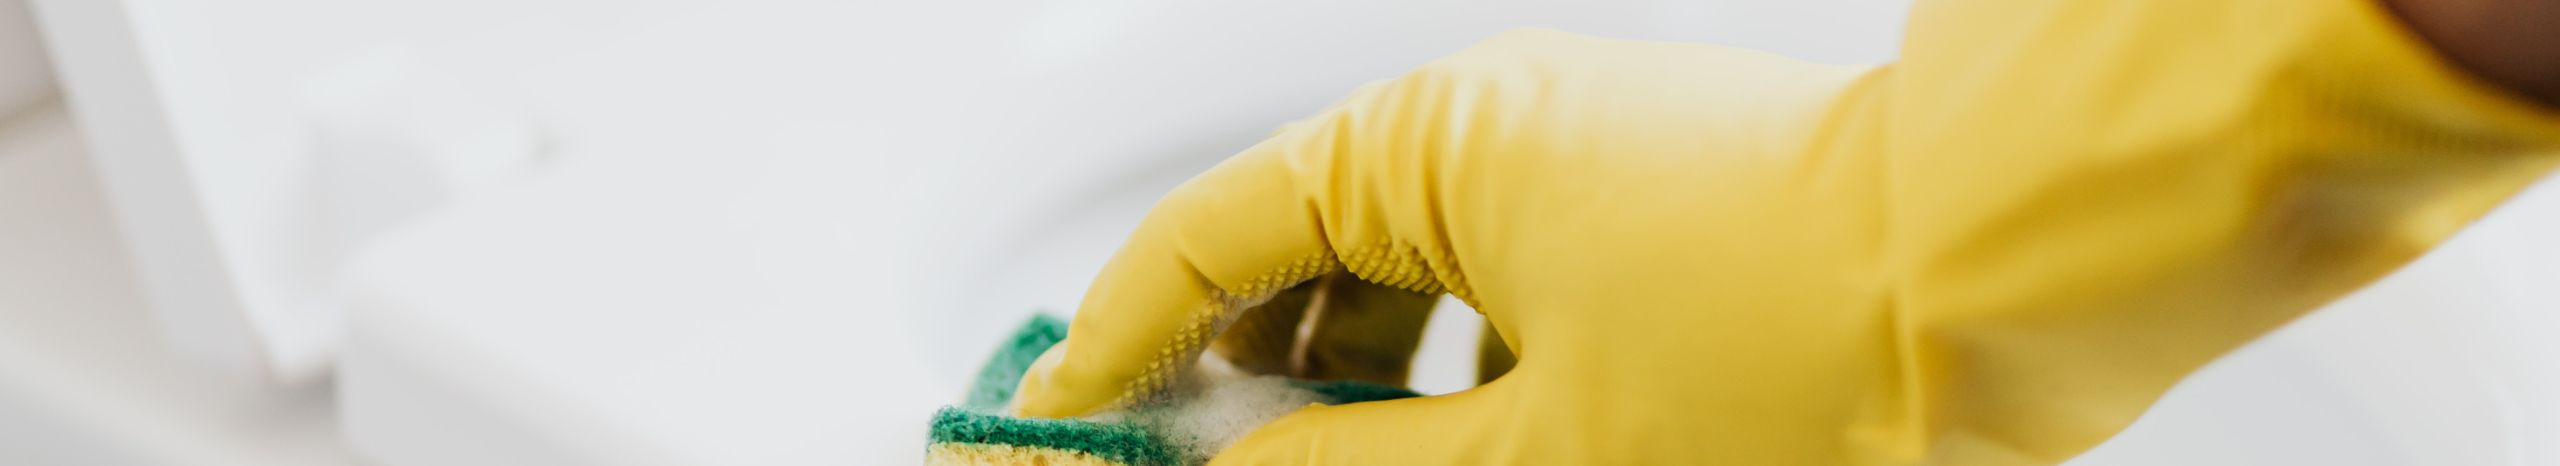 Tegeleme erinevate kvaliteetsete puhastus- ja koristusteenuste pakkumisega, tagades kliendi rahulolu ja eluruumide ohutuse.